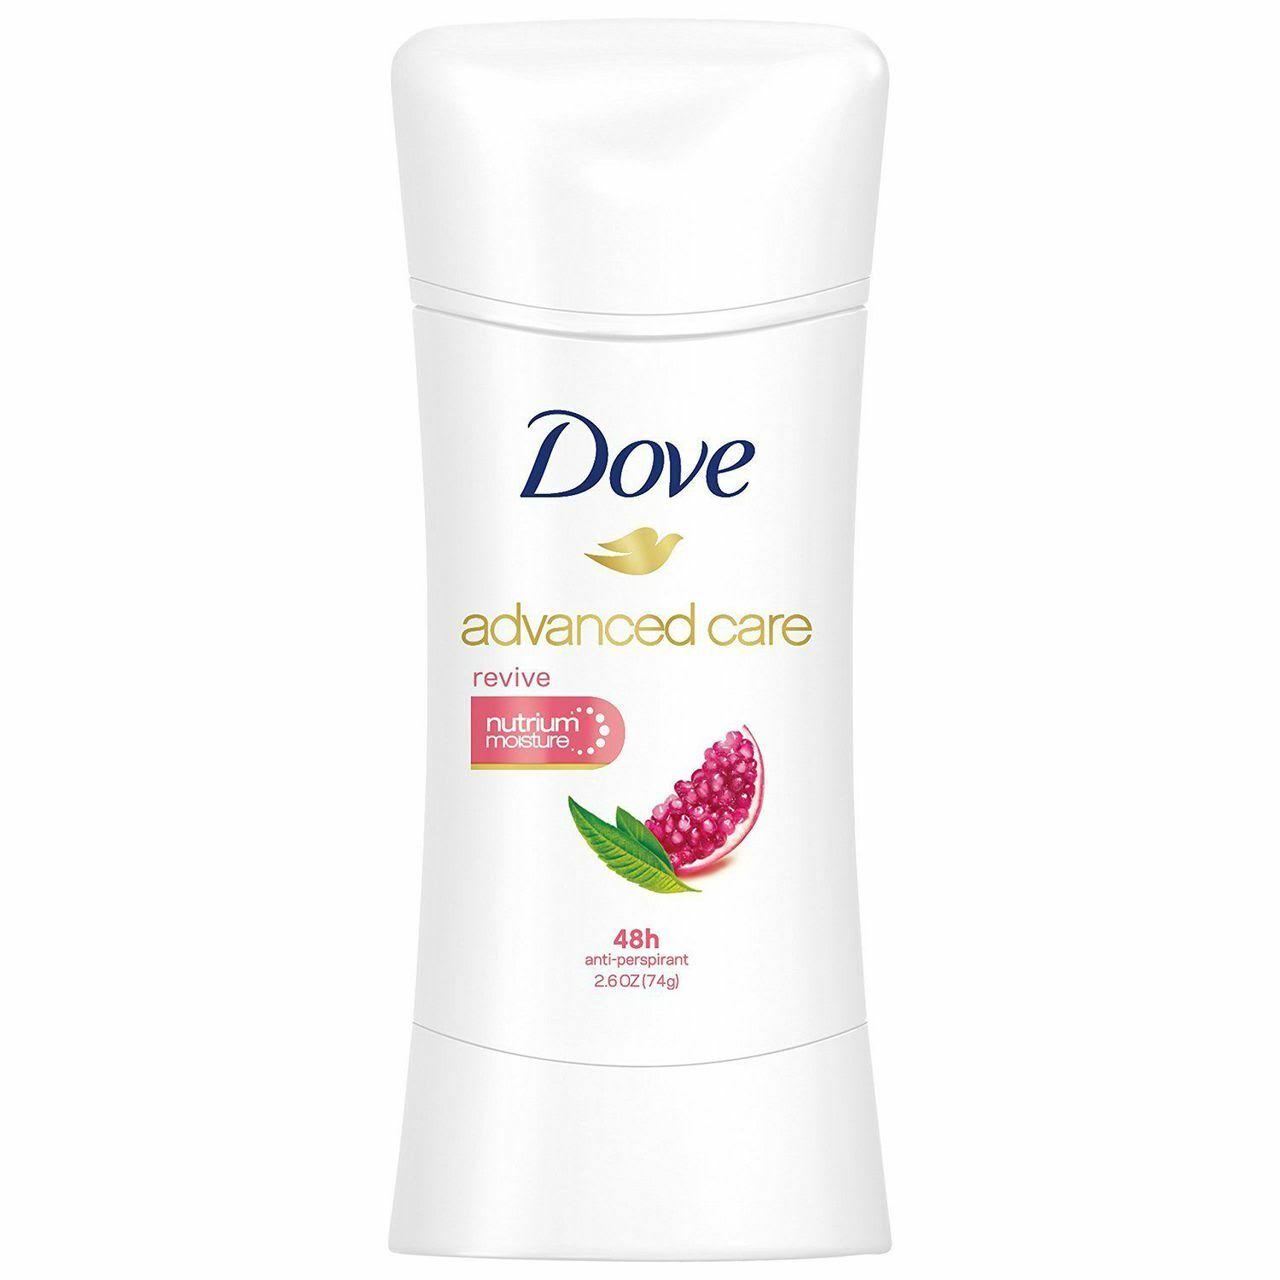 Dove Advanced Care Revive 48h Anti Perspirant - 2.6oz